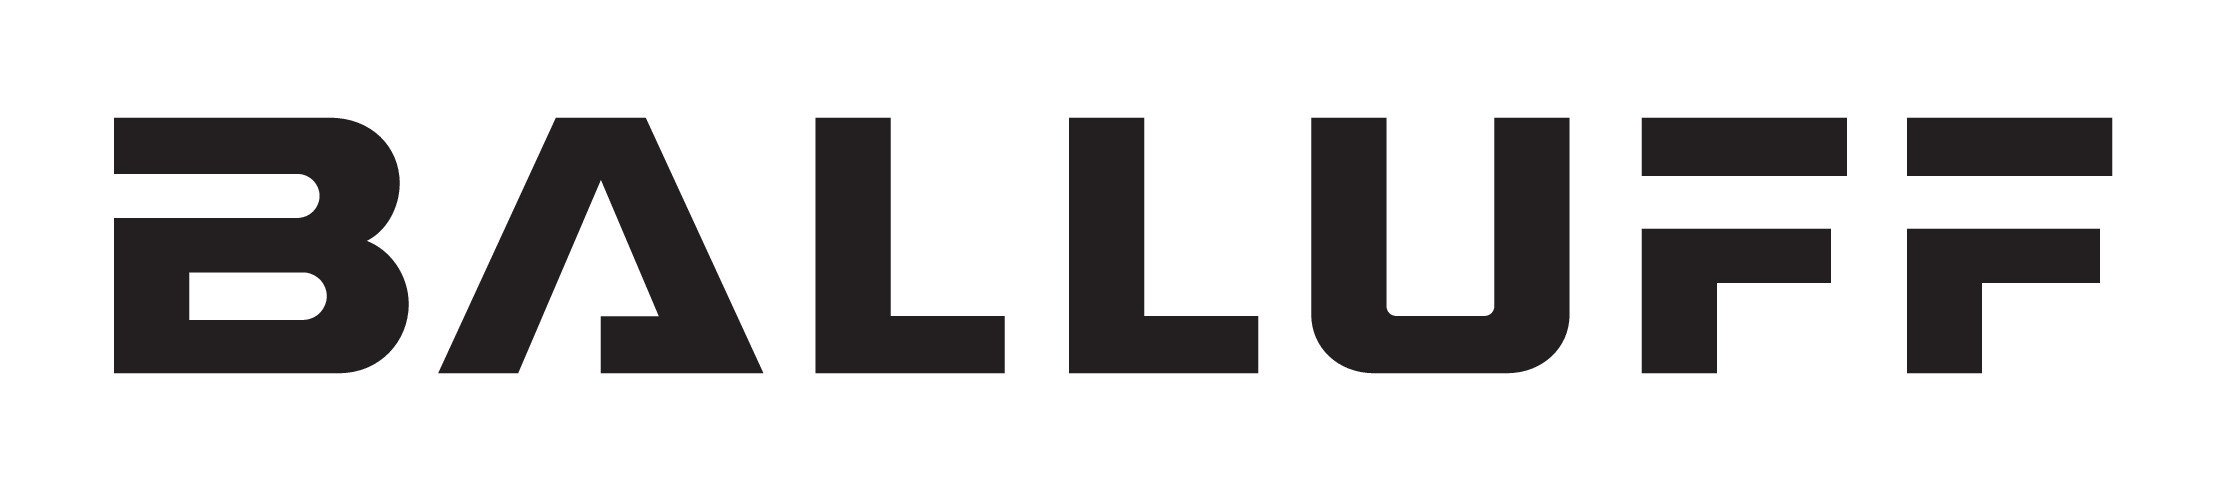 Balluff_Logo_CMYK_pos